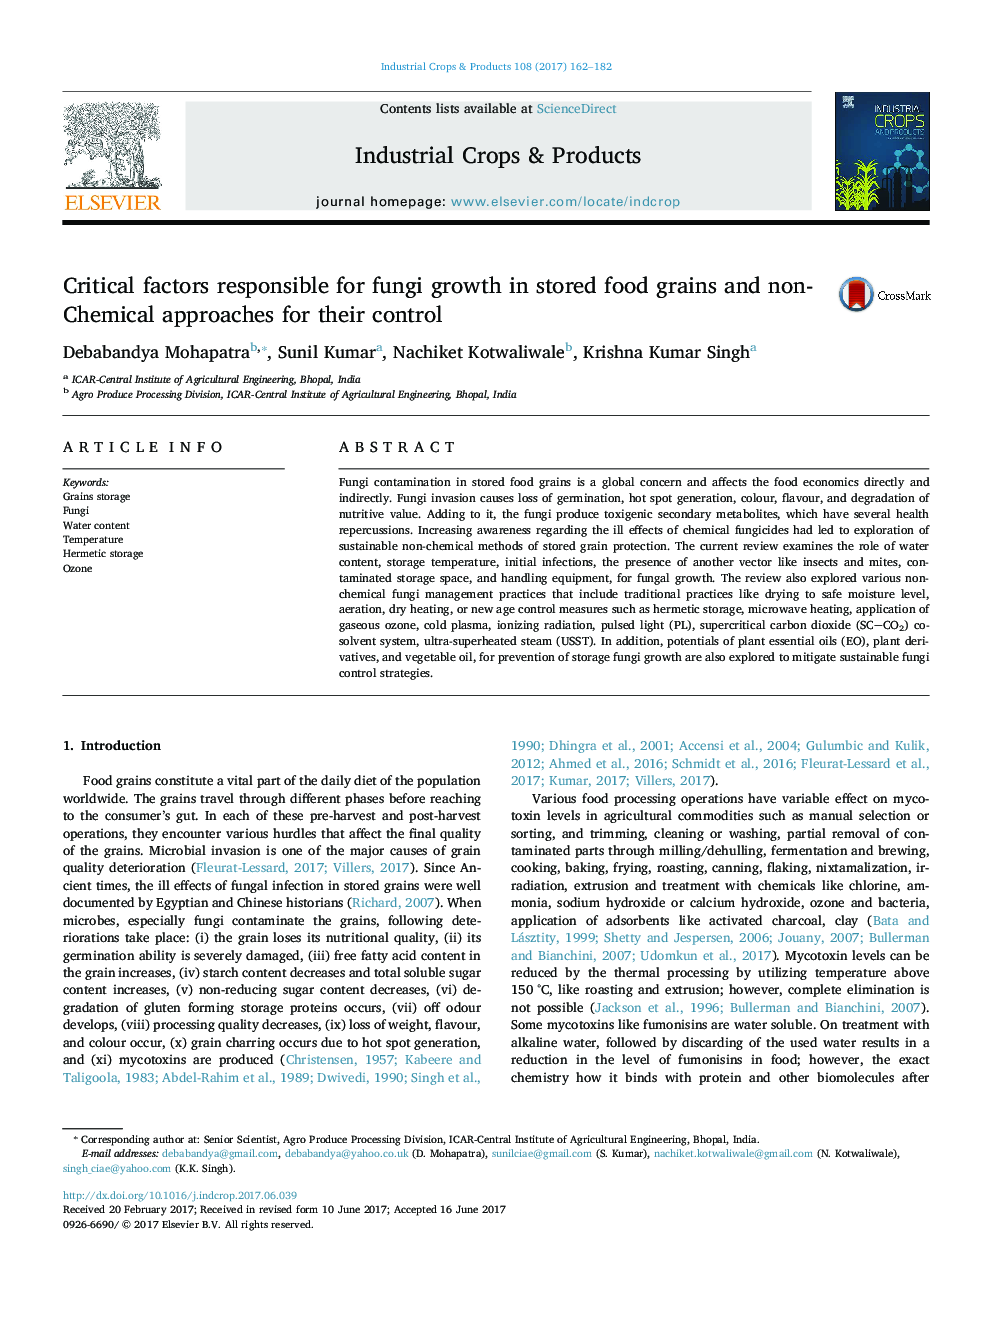 عوامل موثر بر رشد قارچ در دانه های خوراکی و روش های غیر شیمیایی برای کنترل آنها 